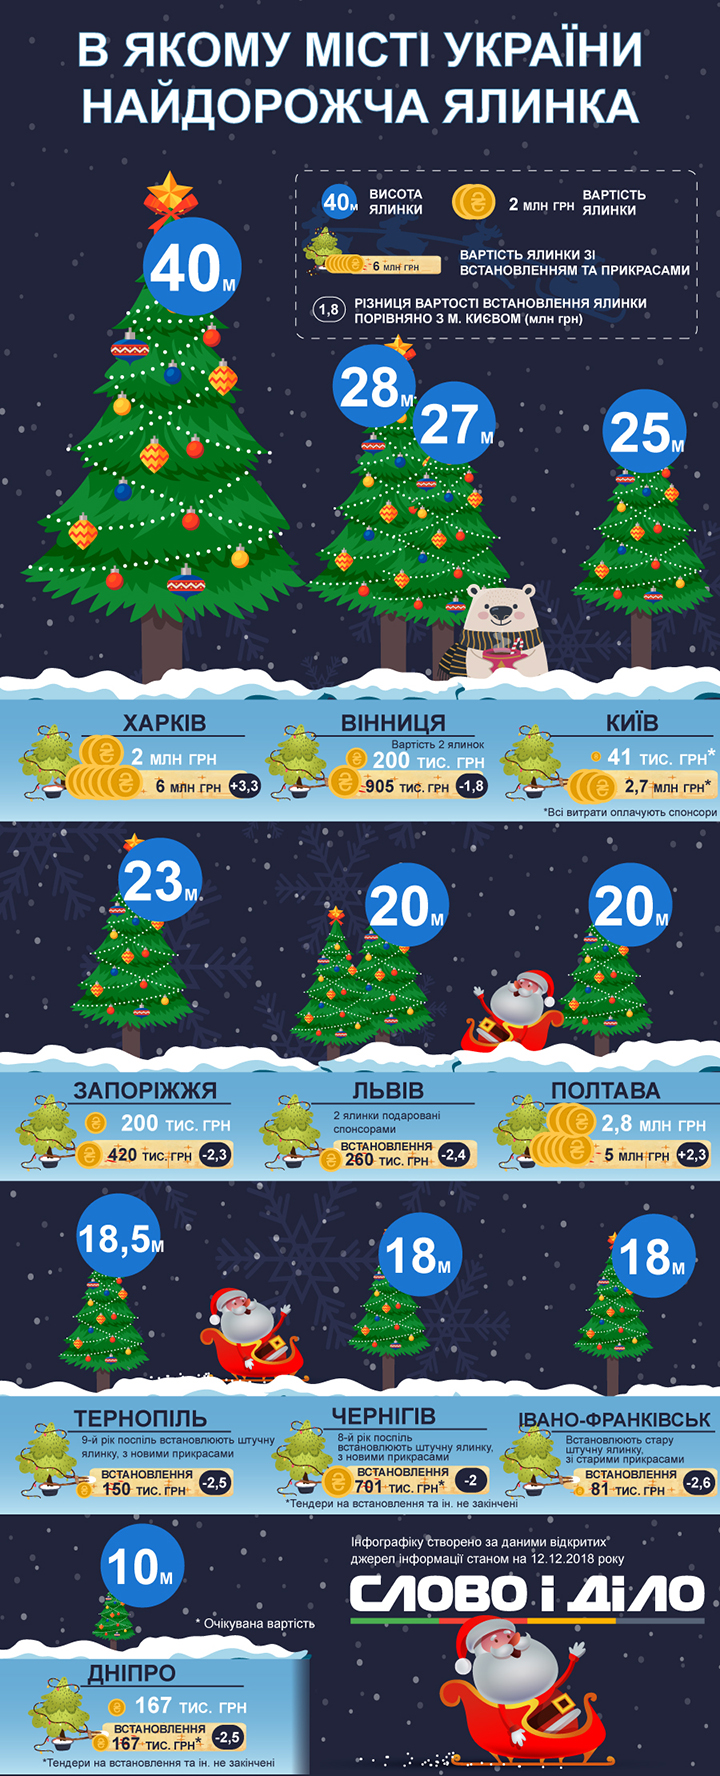 Найдорожча, найвища, найменша — якими будуть міські новорічні ялинки в Україні